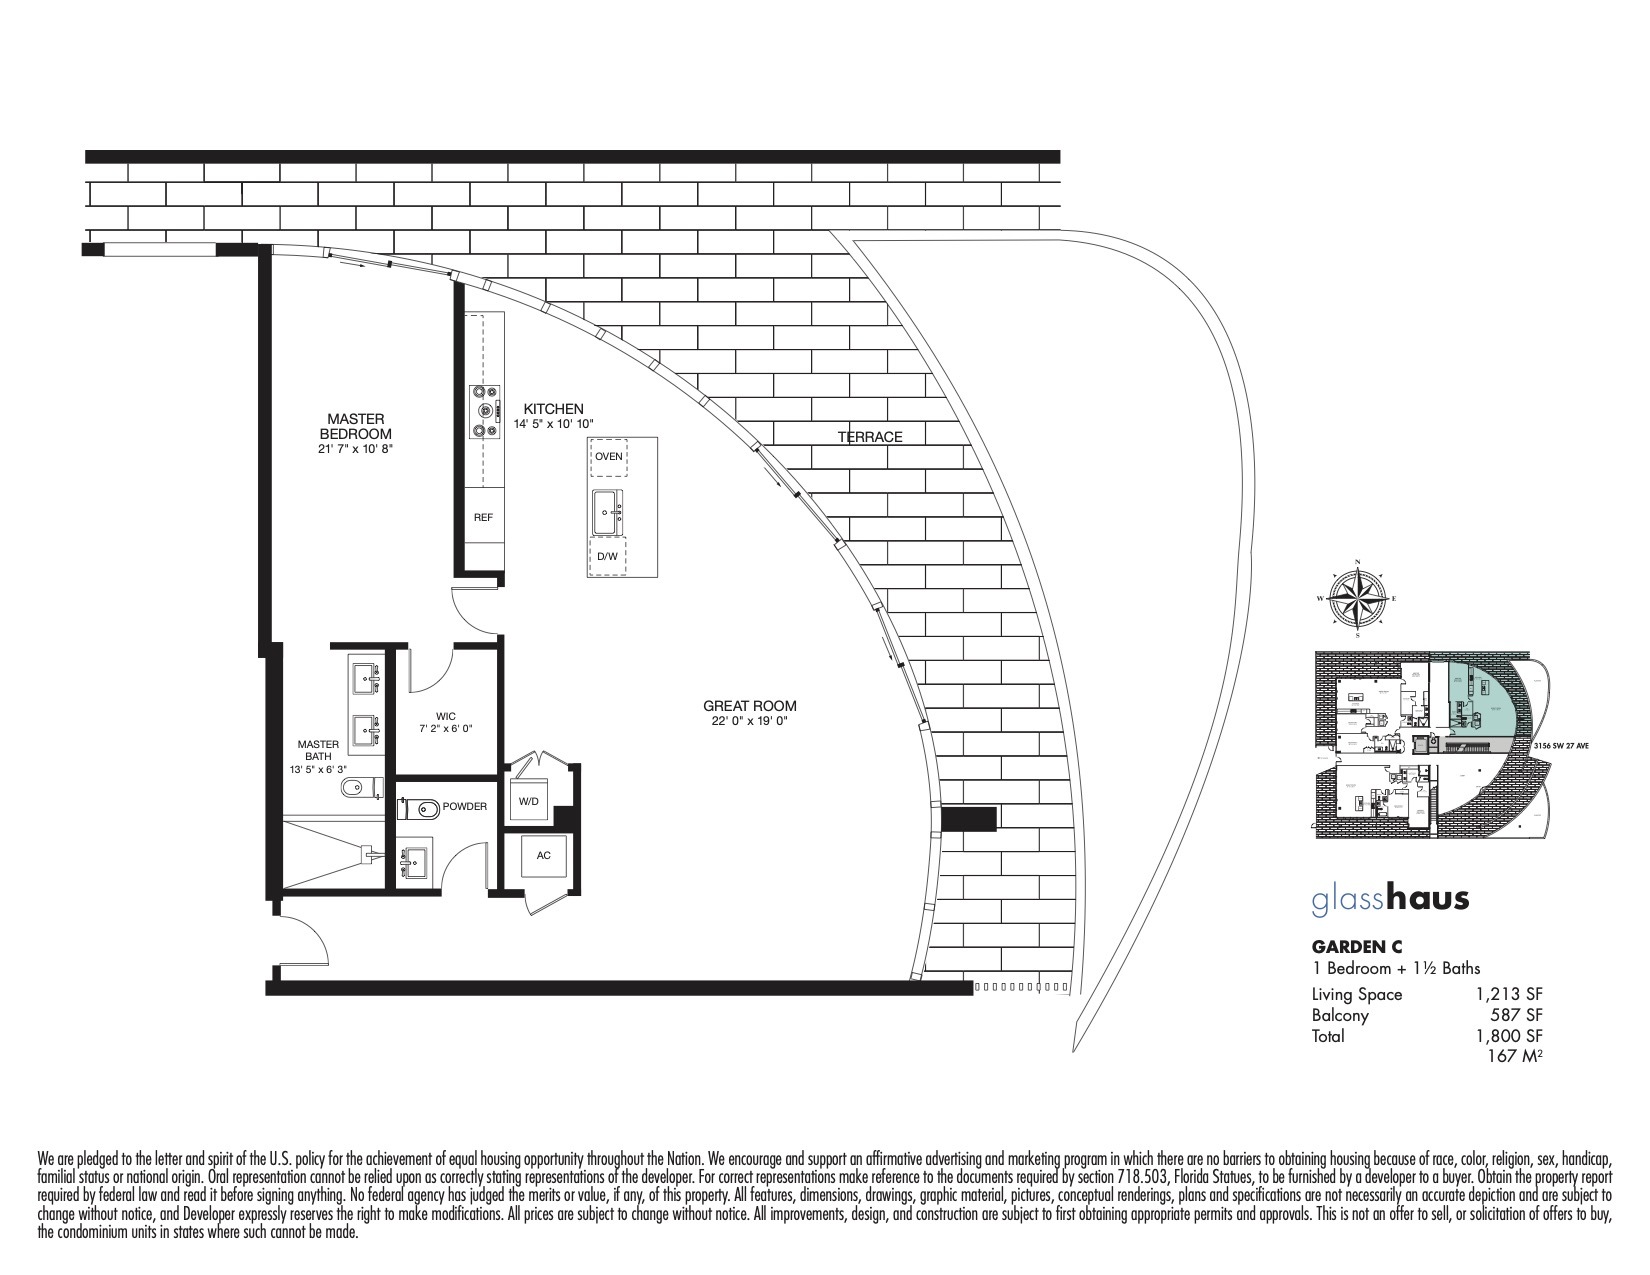 Floor Plan for GlassHaus Coconut Grove Floorplans, Garden C